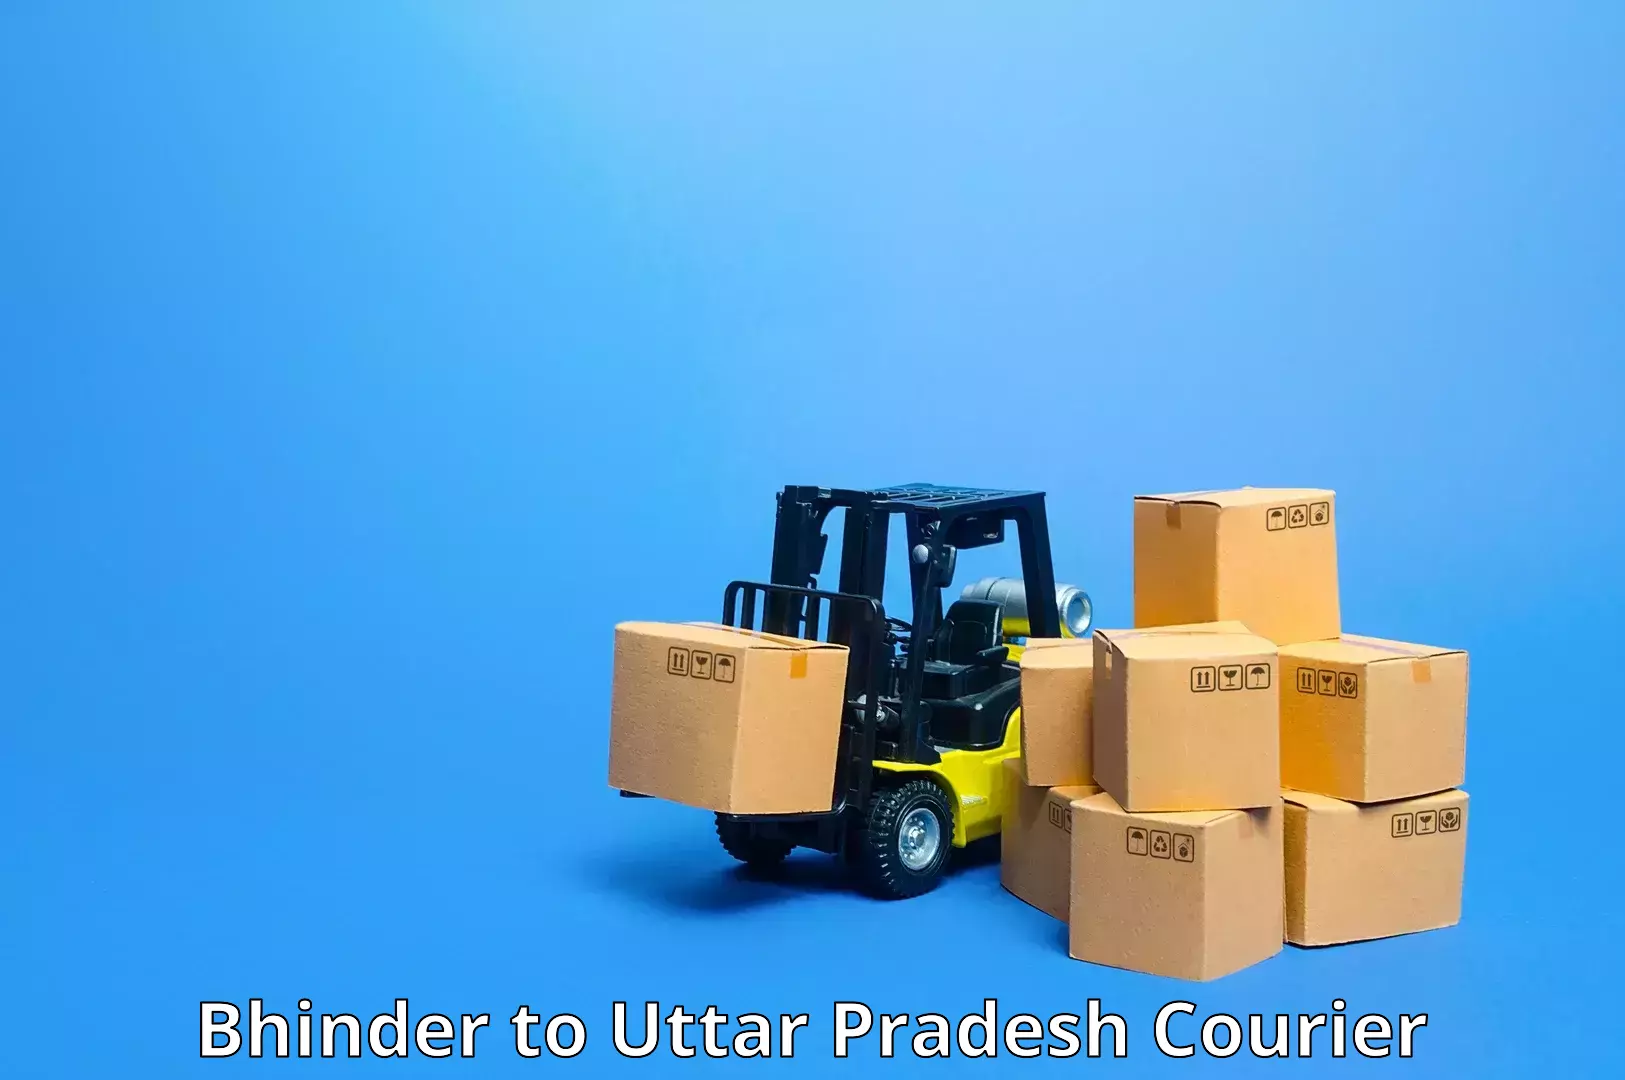 Urban courier service Bhinder to Uttar Pradesh